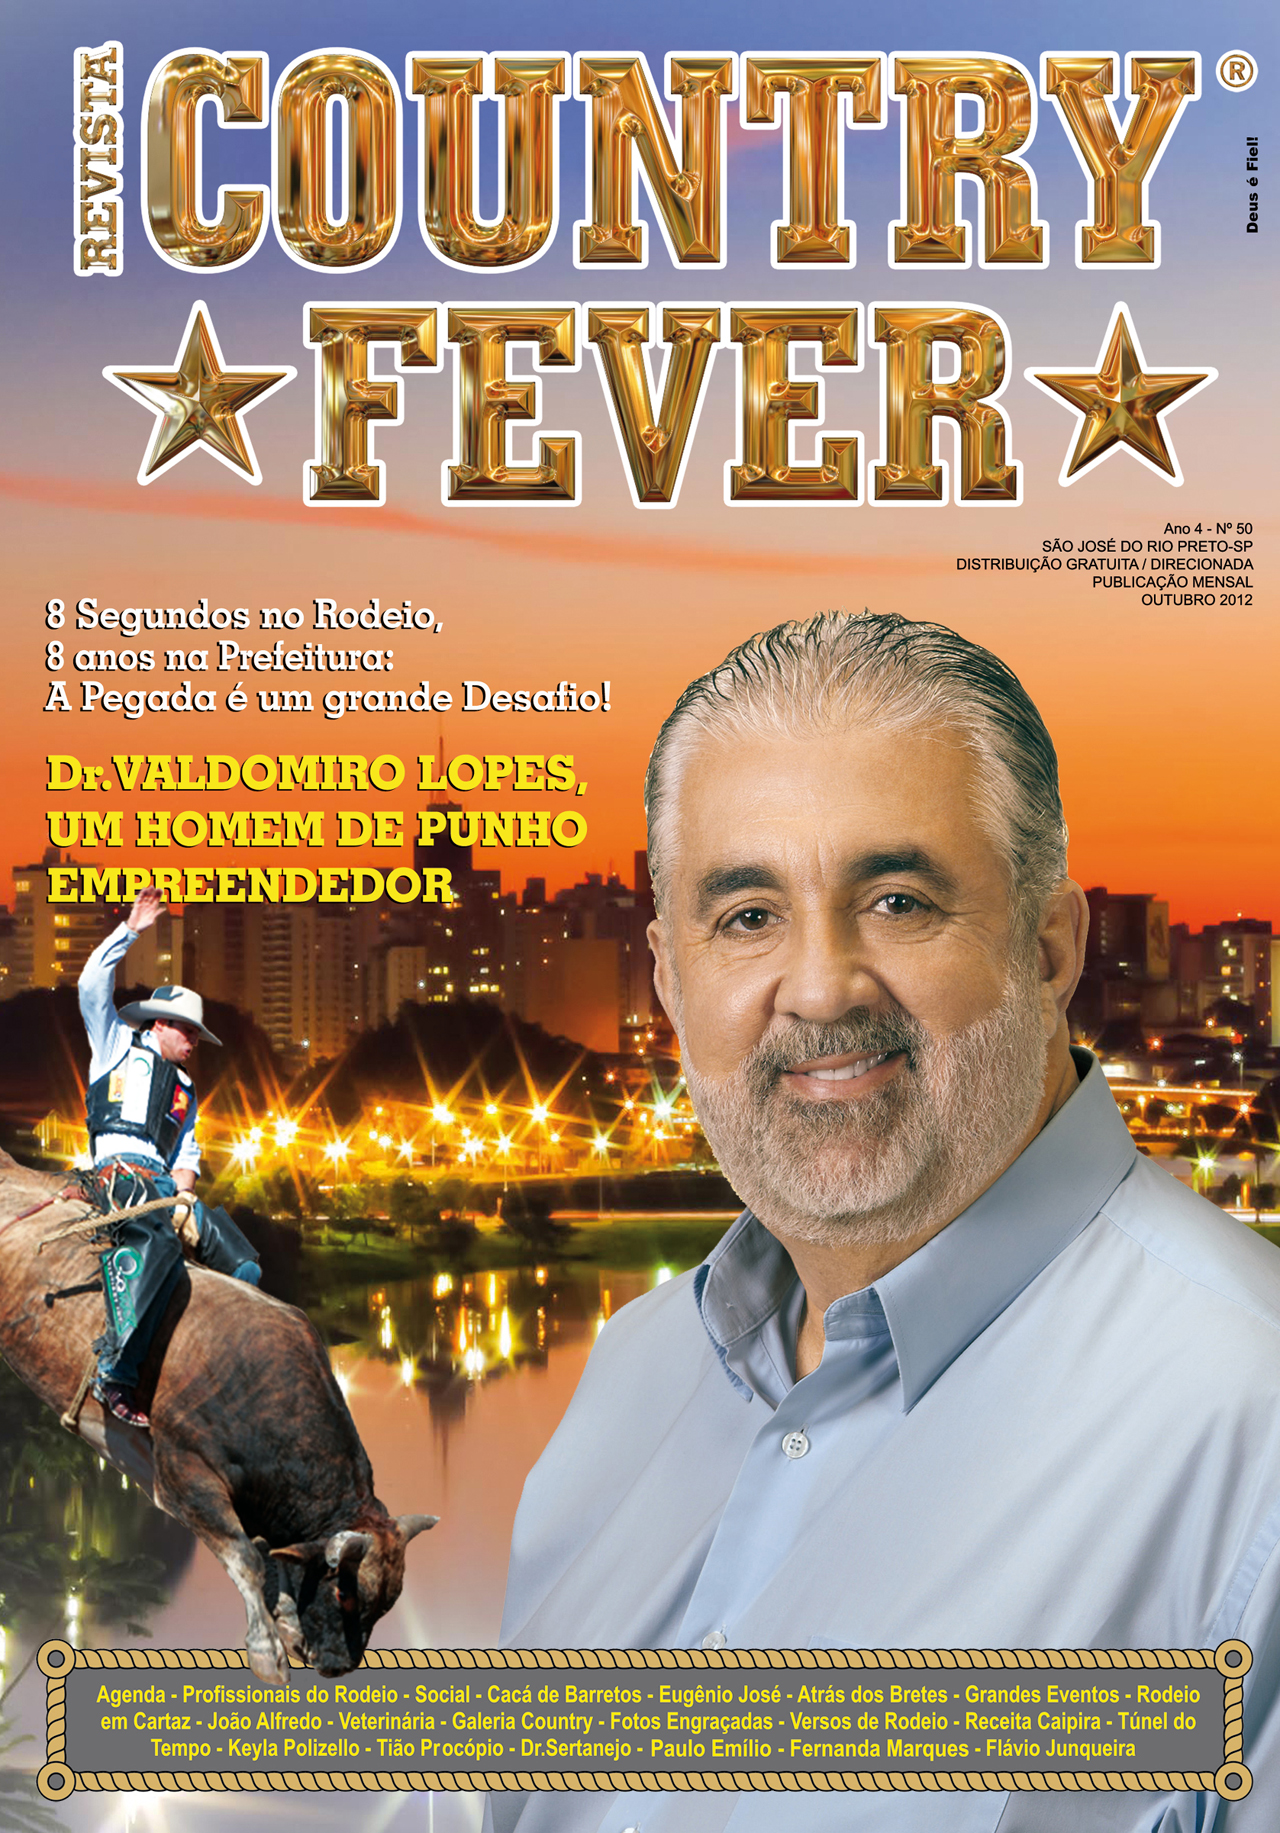 Revista Country Fever - Edição de Outubro de 2012